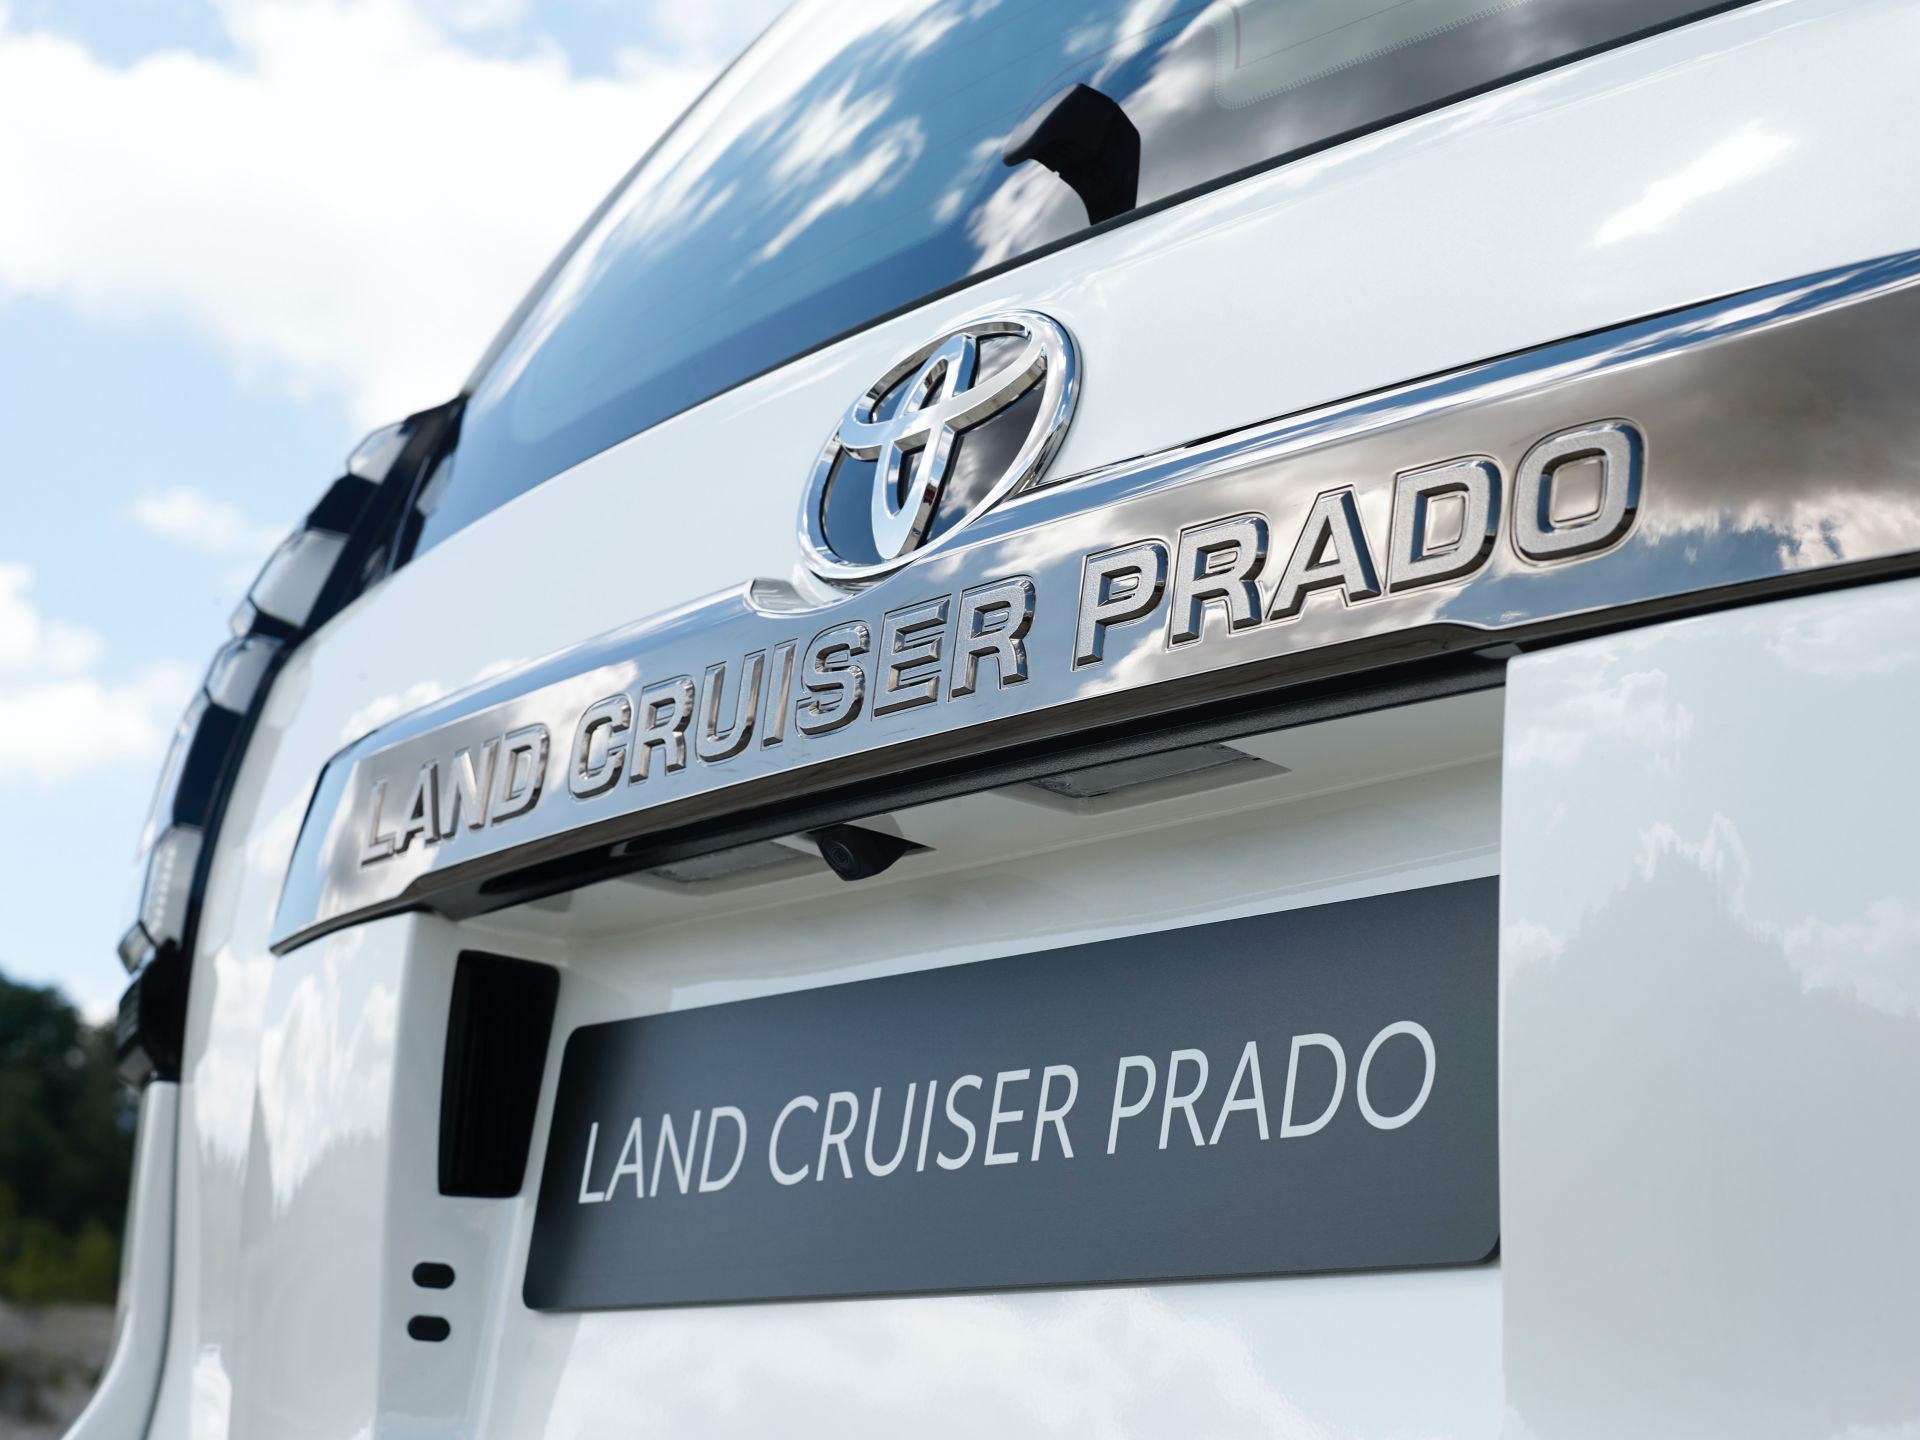 2021 Toyota Land Cruiser Prado Detail Wallpapers #68 of 77